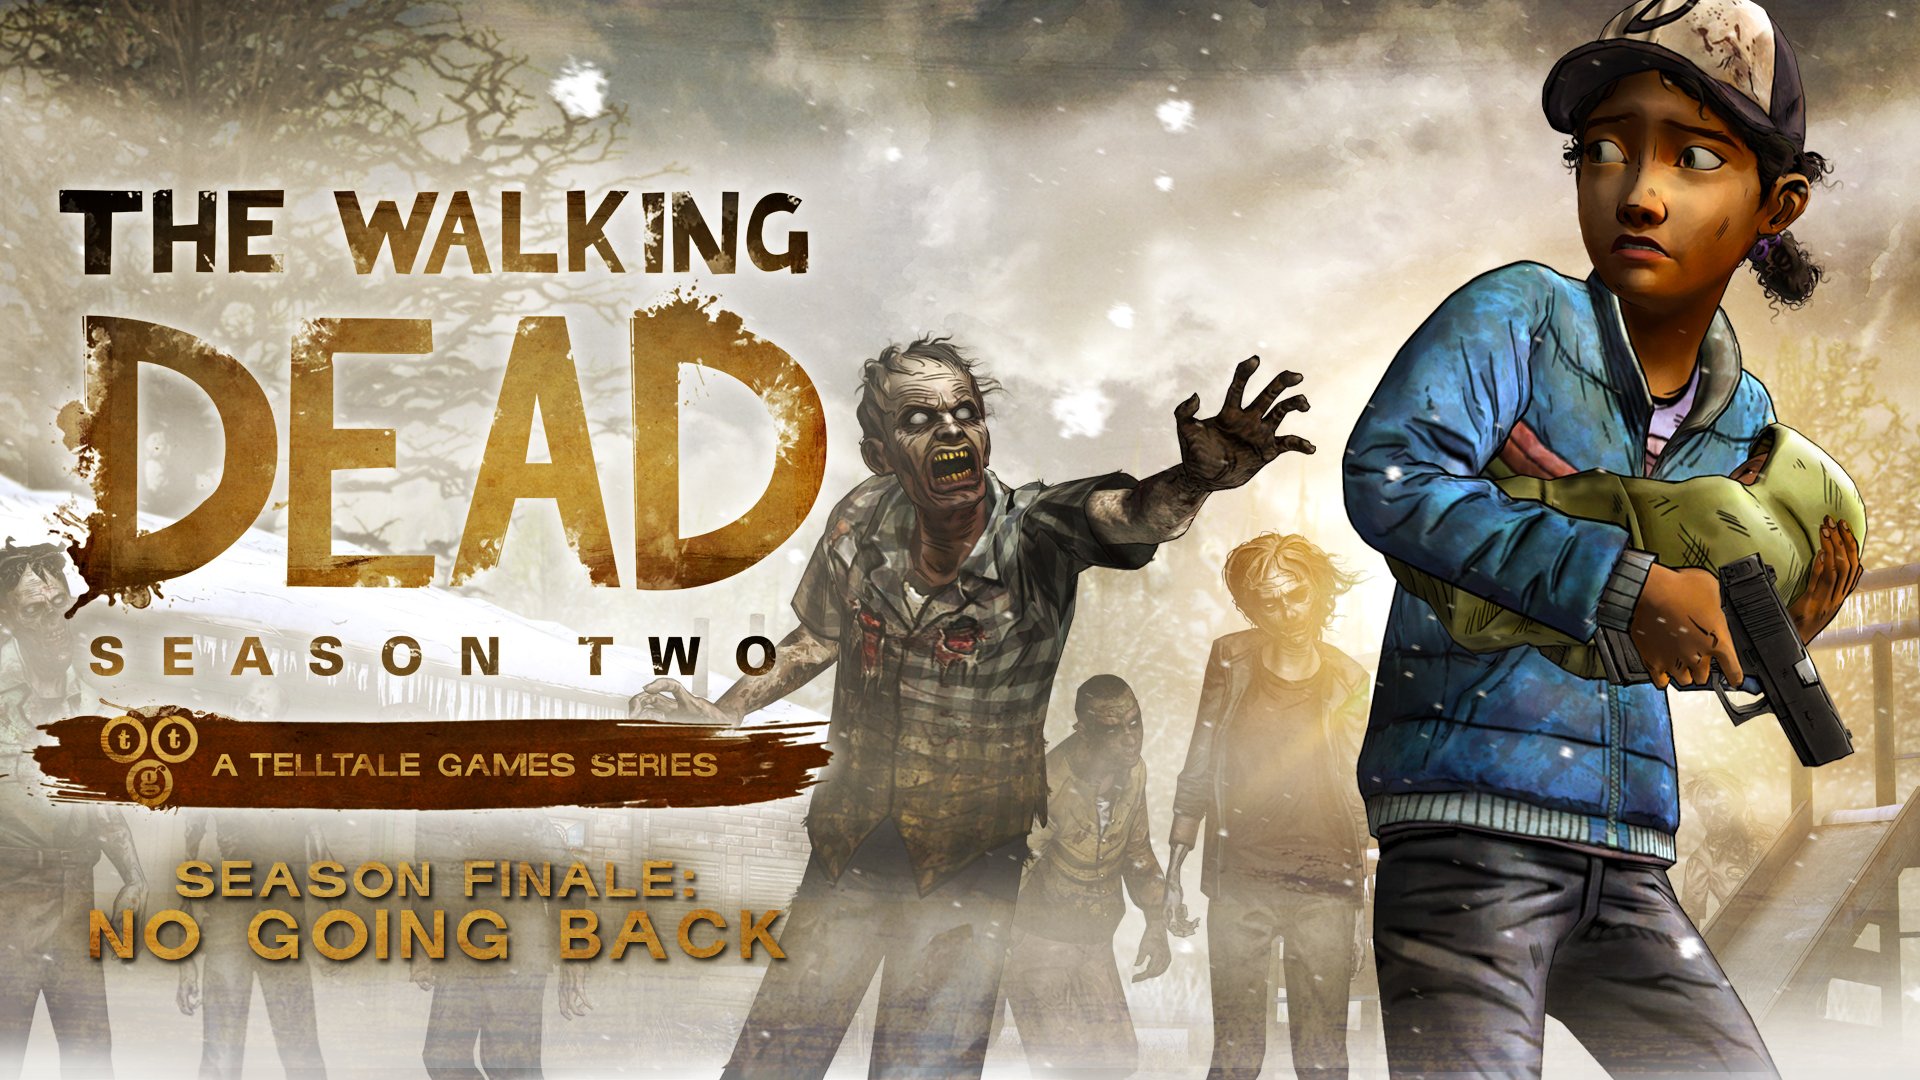 The Walking Dead Season 2 Episodes Full